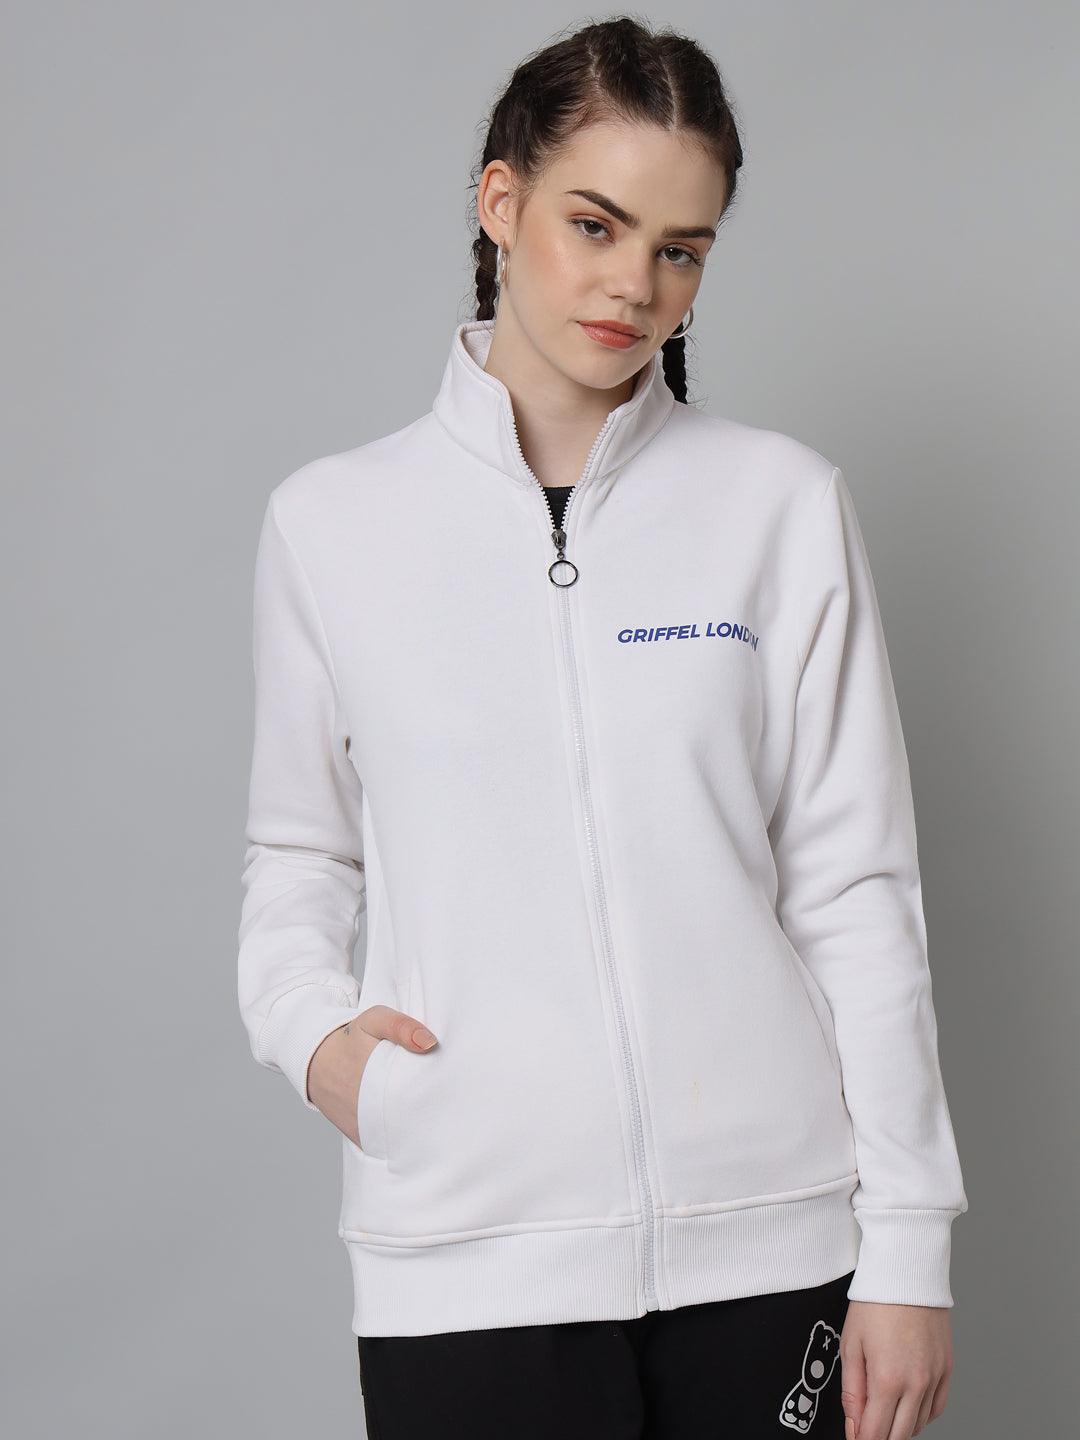 Griffel Women’s Cotton Fleece Full Sleeve White Zipper Sweatshirt - griffel